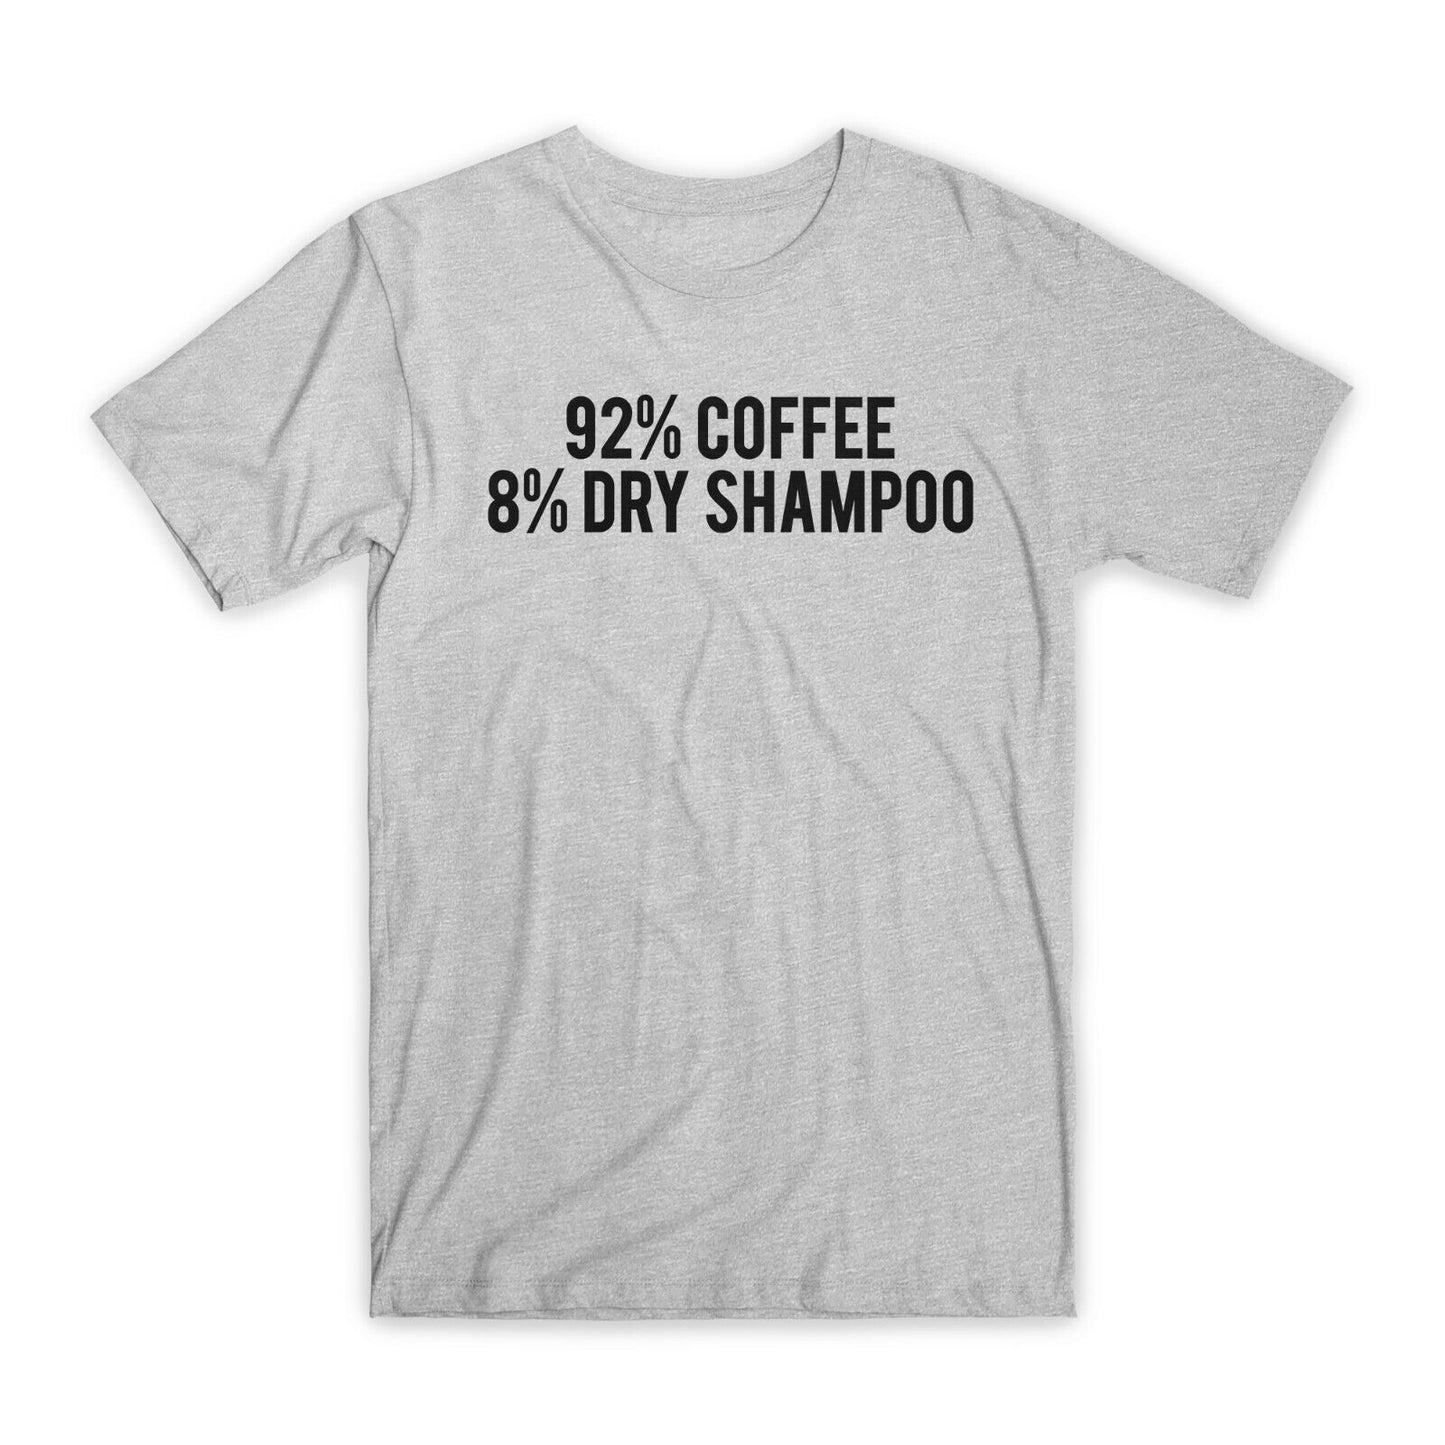 92% Coffee 8% Dry Shampoo T-Shirt Premium Cotton Funny Tees, Black/Gray NEW